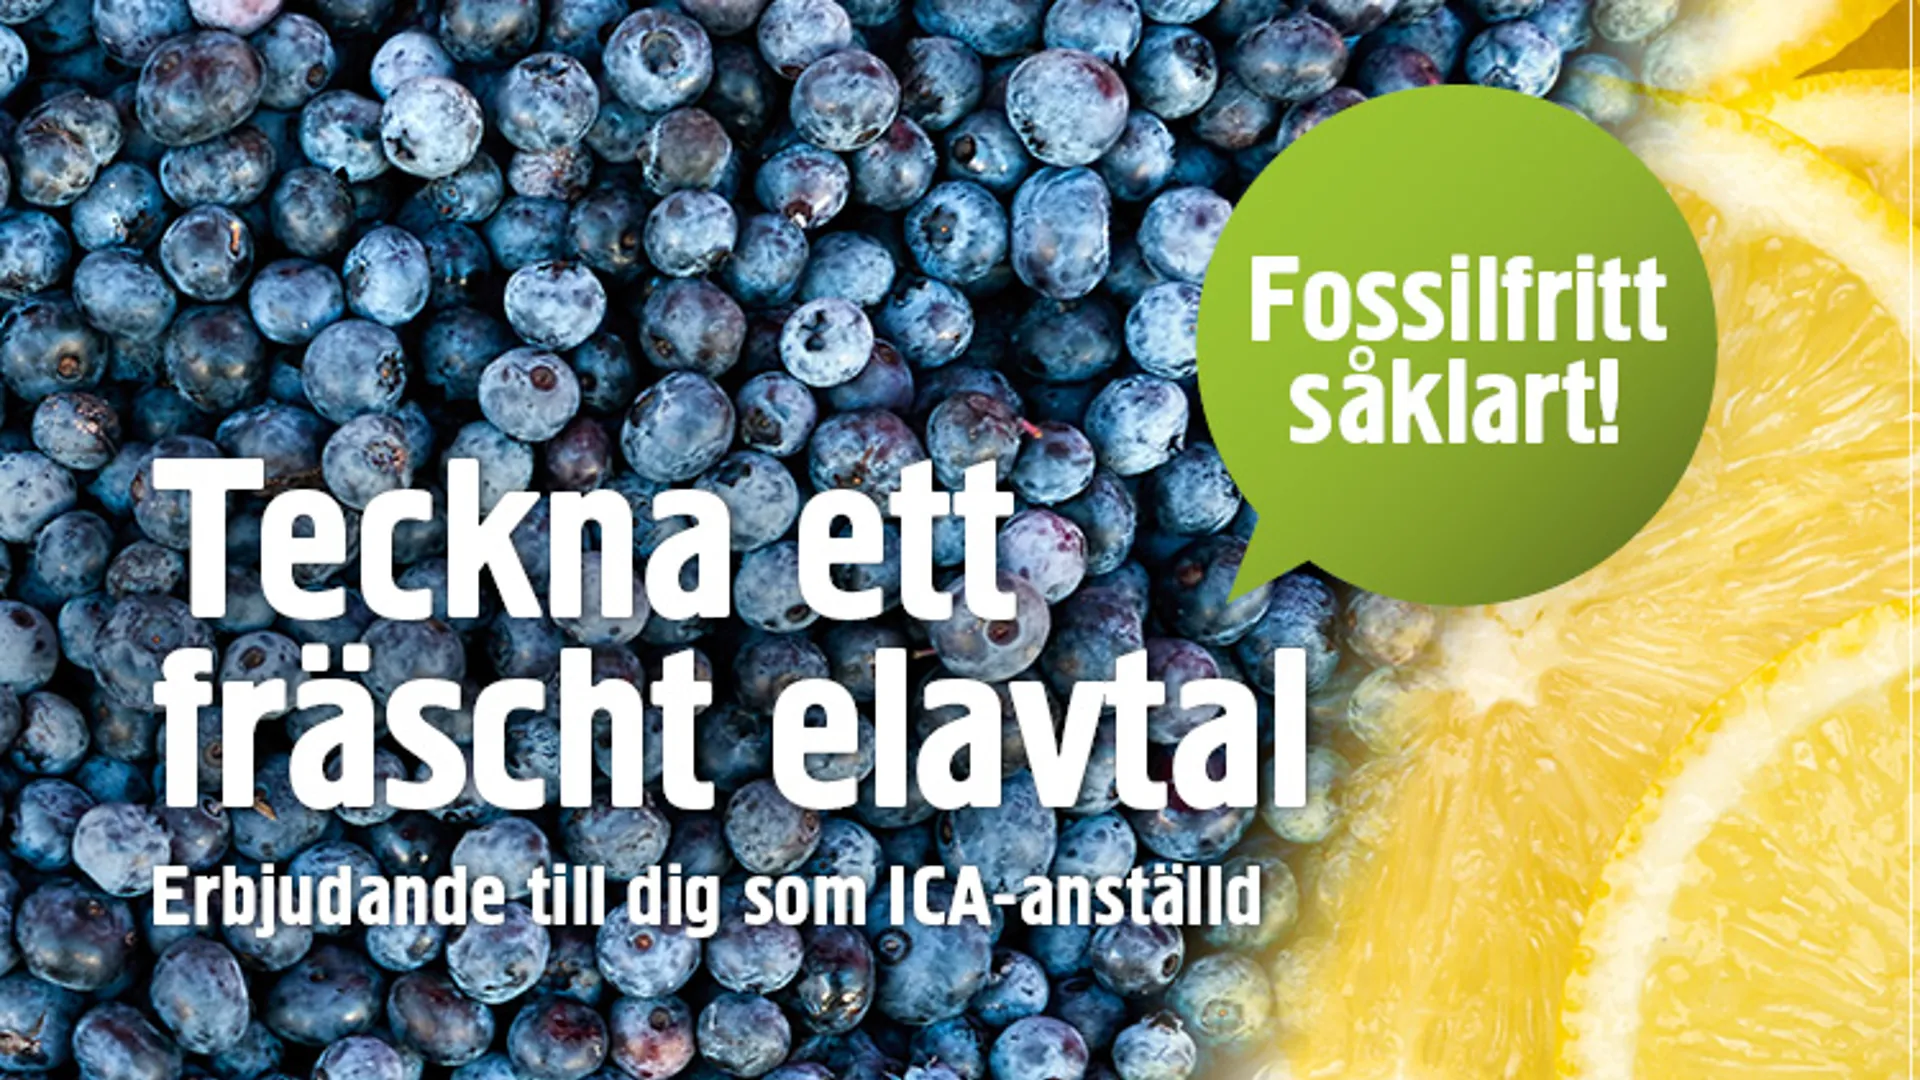 Bild på blåbär och citron i ett kampanjerbjudande för ICA-anställda